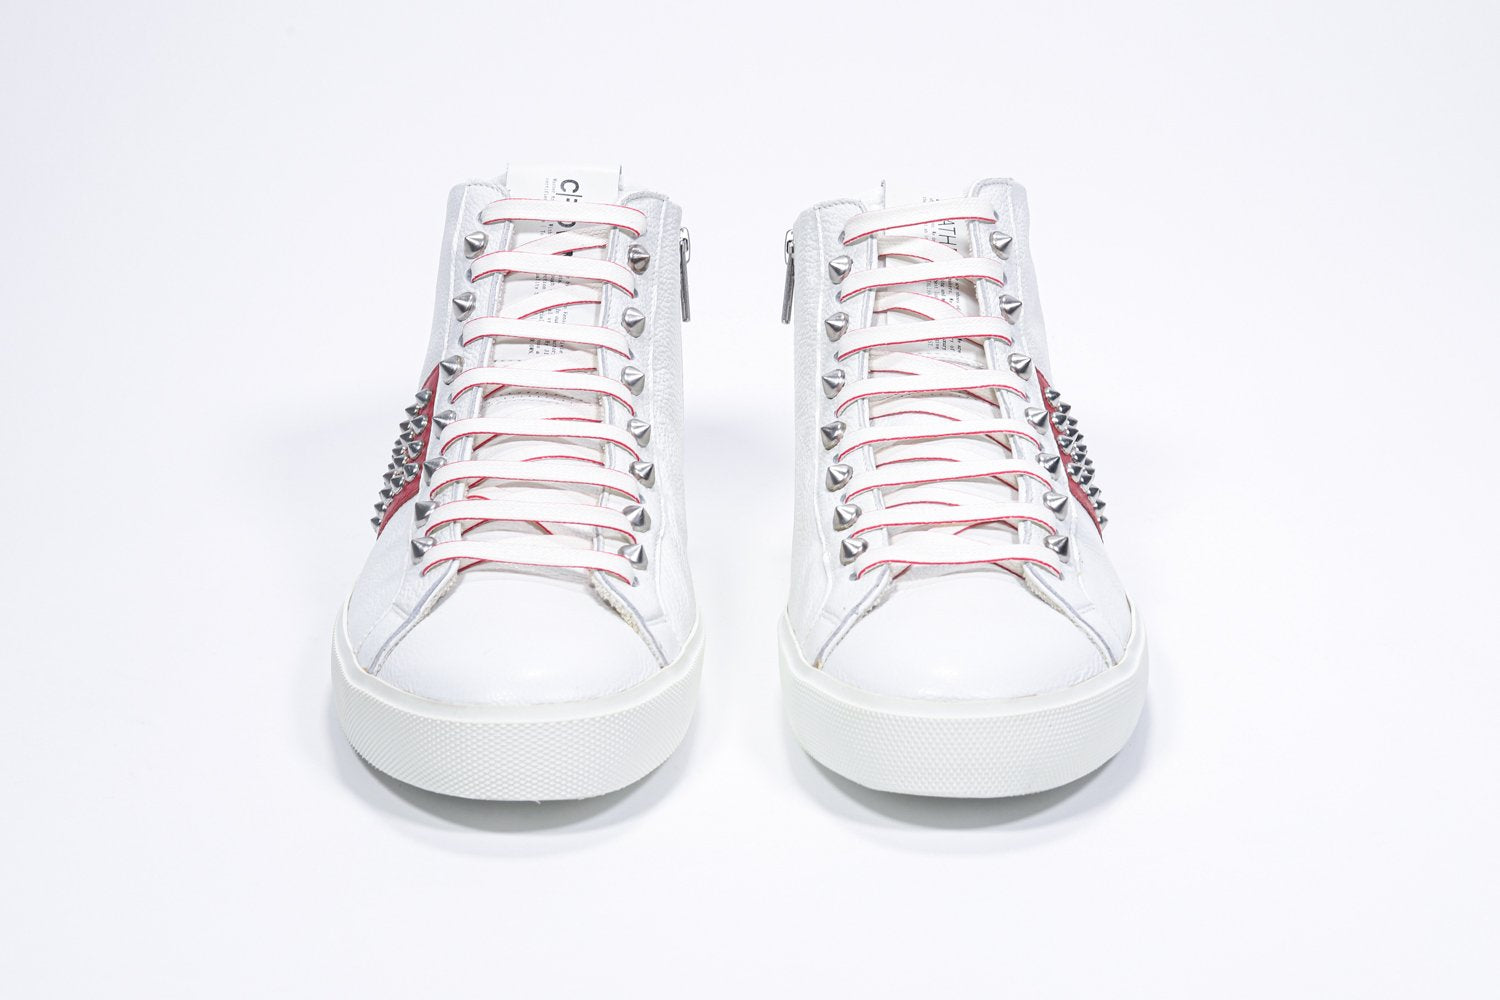 Vorderansicht des weißen und roten Mid-Top sneaker. Obermaterial aus Vollleder mit Nieten, einem internen Reißverschluss und weißer Gummisohle.